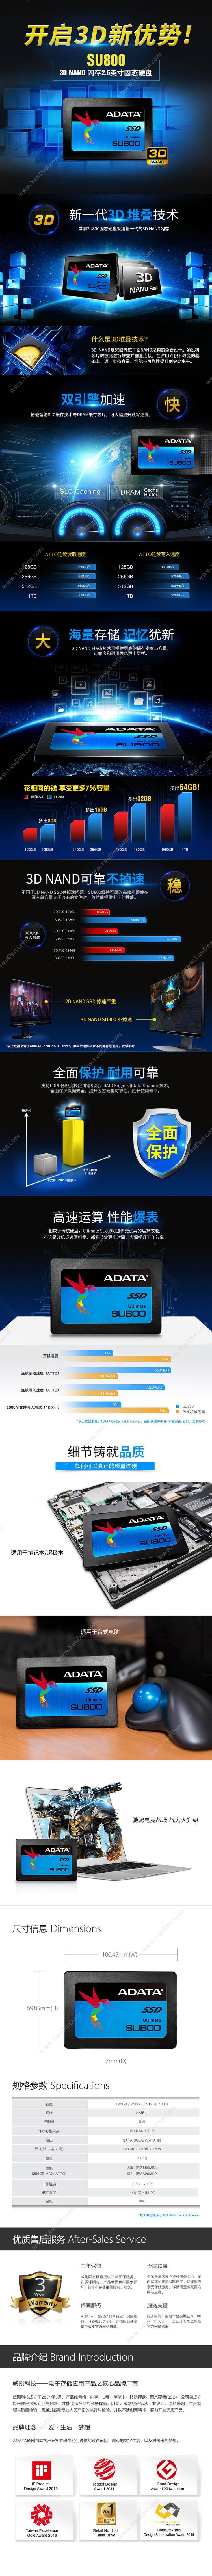 威刚 Adata SU800 256g 固态硬盘